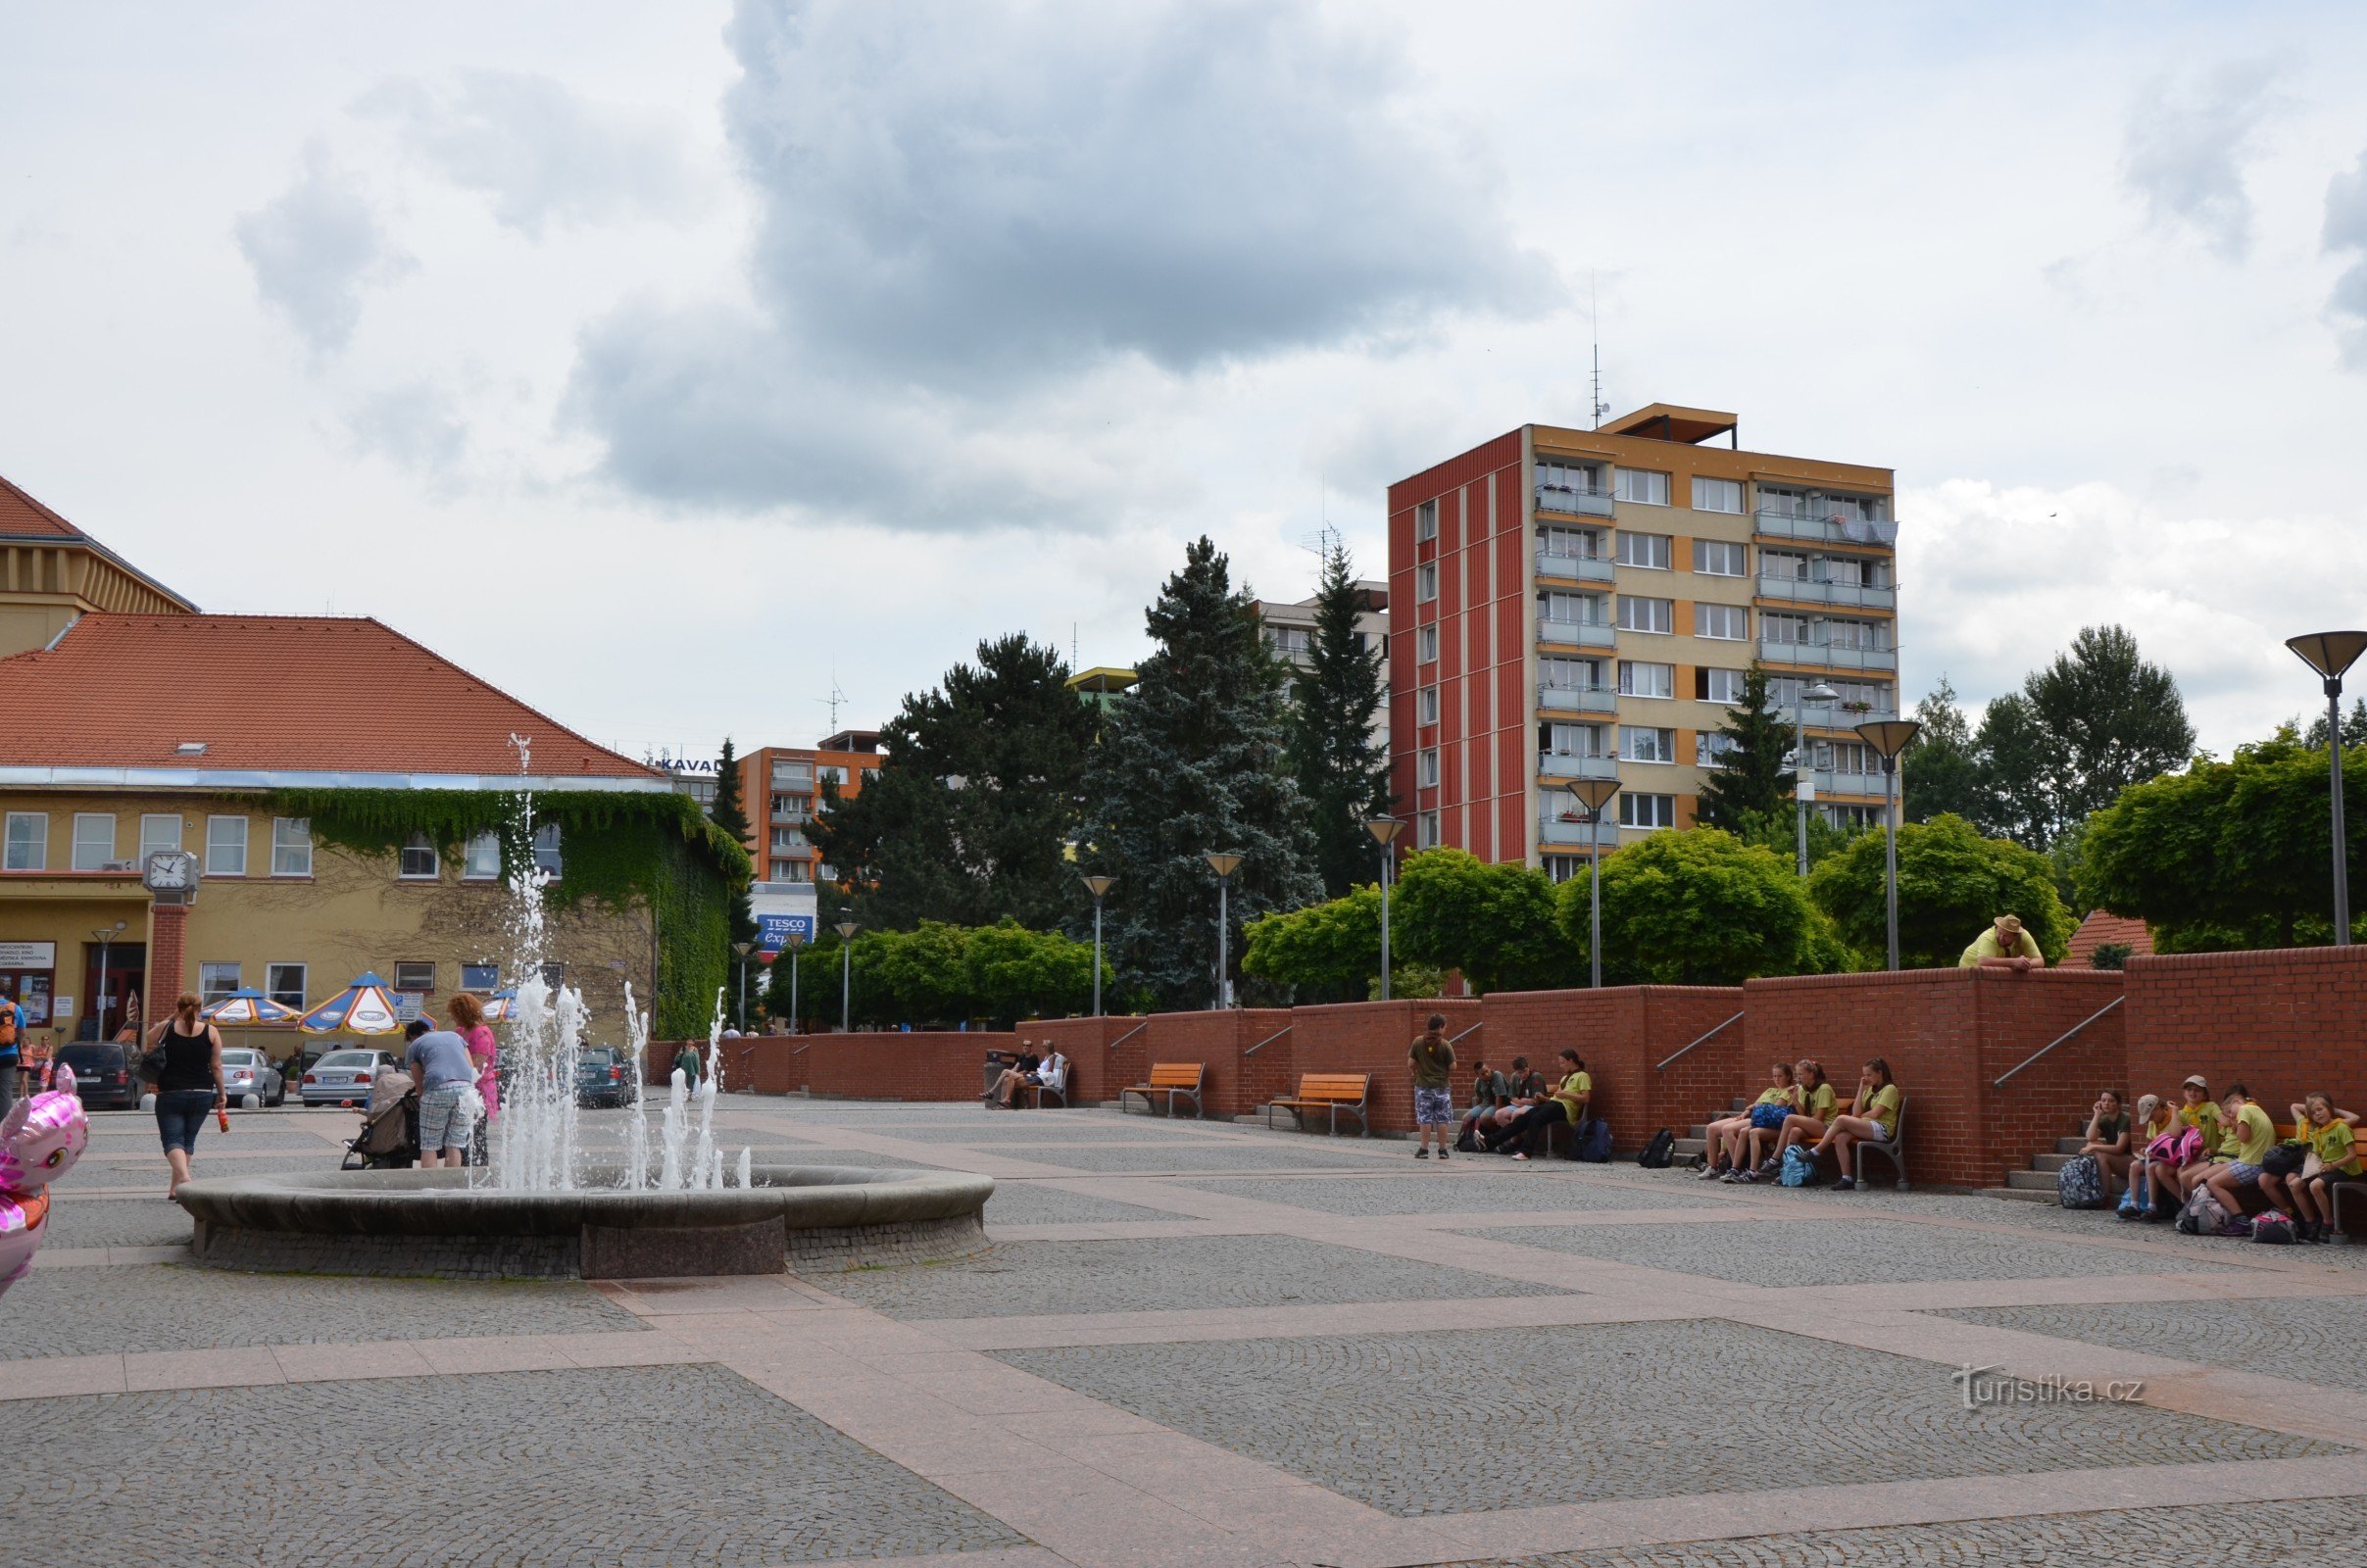 サーザヴァ - ヴォスコフツェとヴェリチャ広場